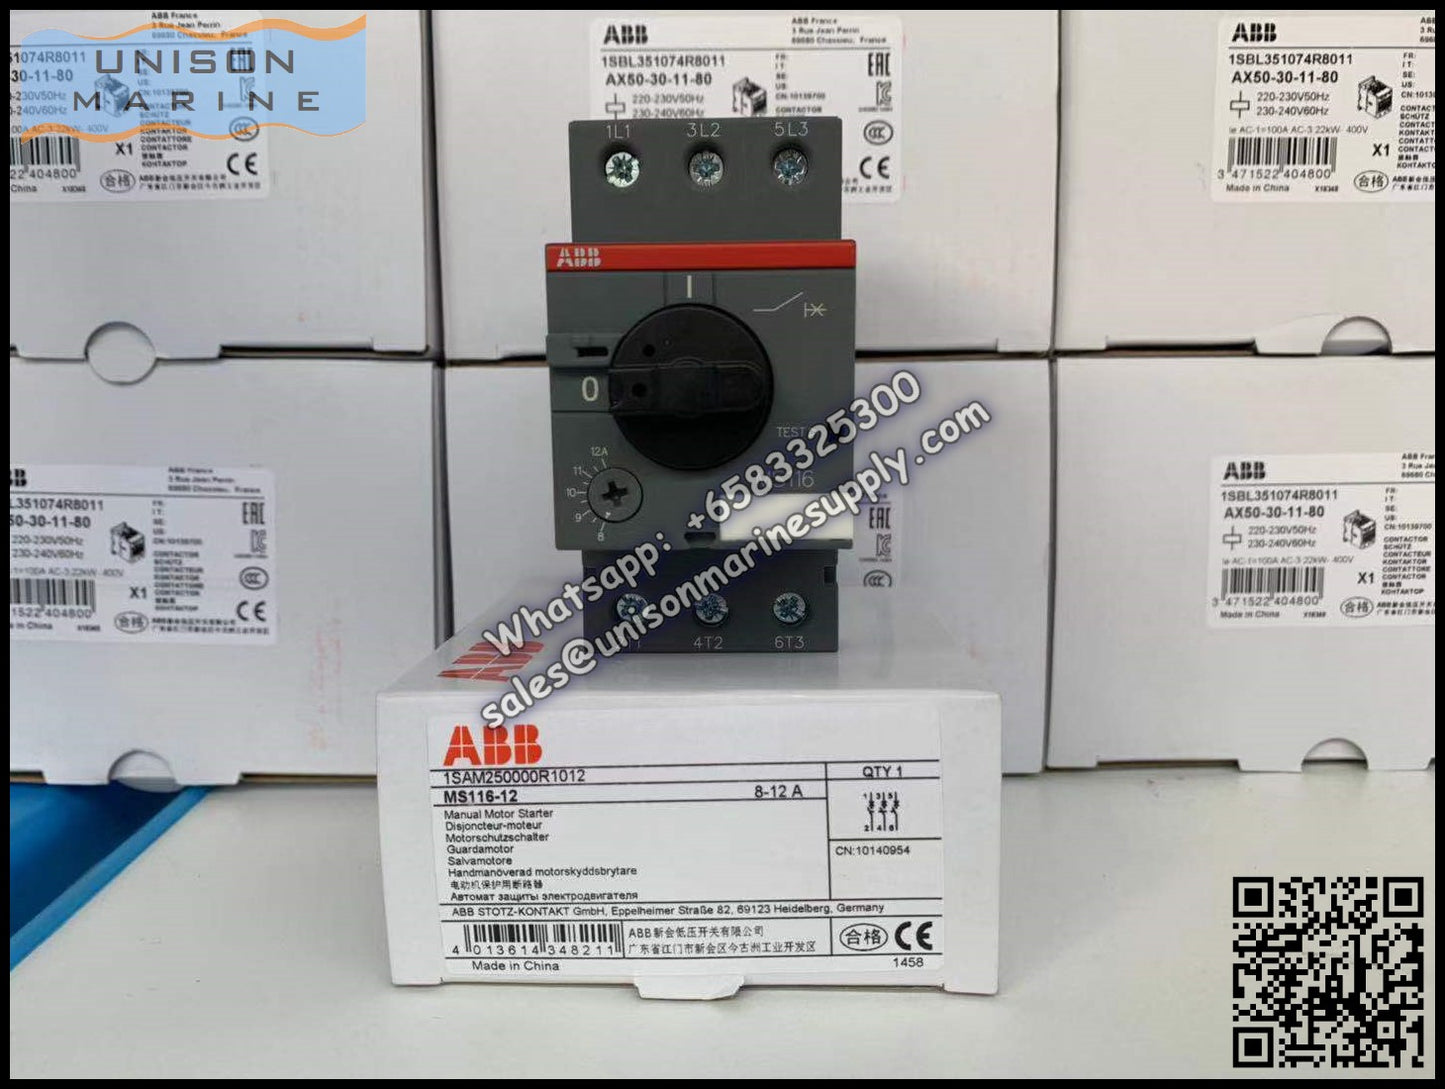 ABB Manual Motor Starter MS116-12 1SAM250000R1012